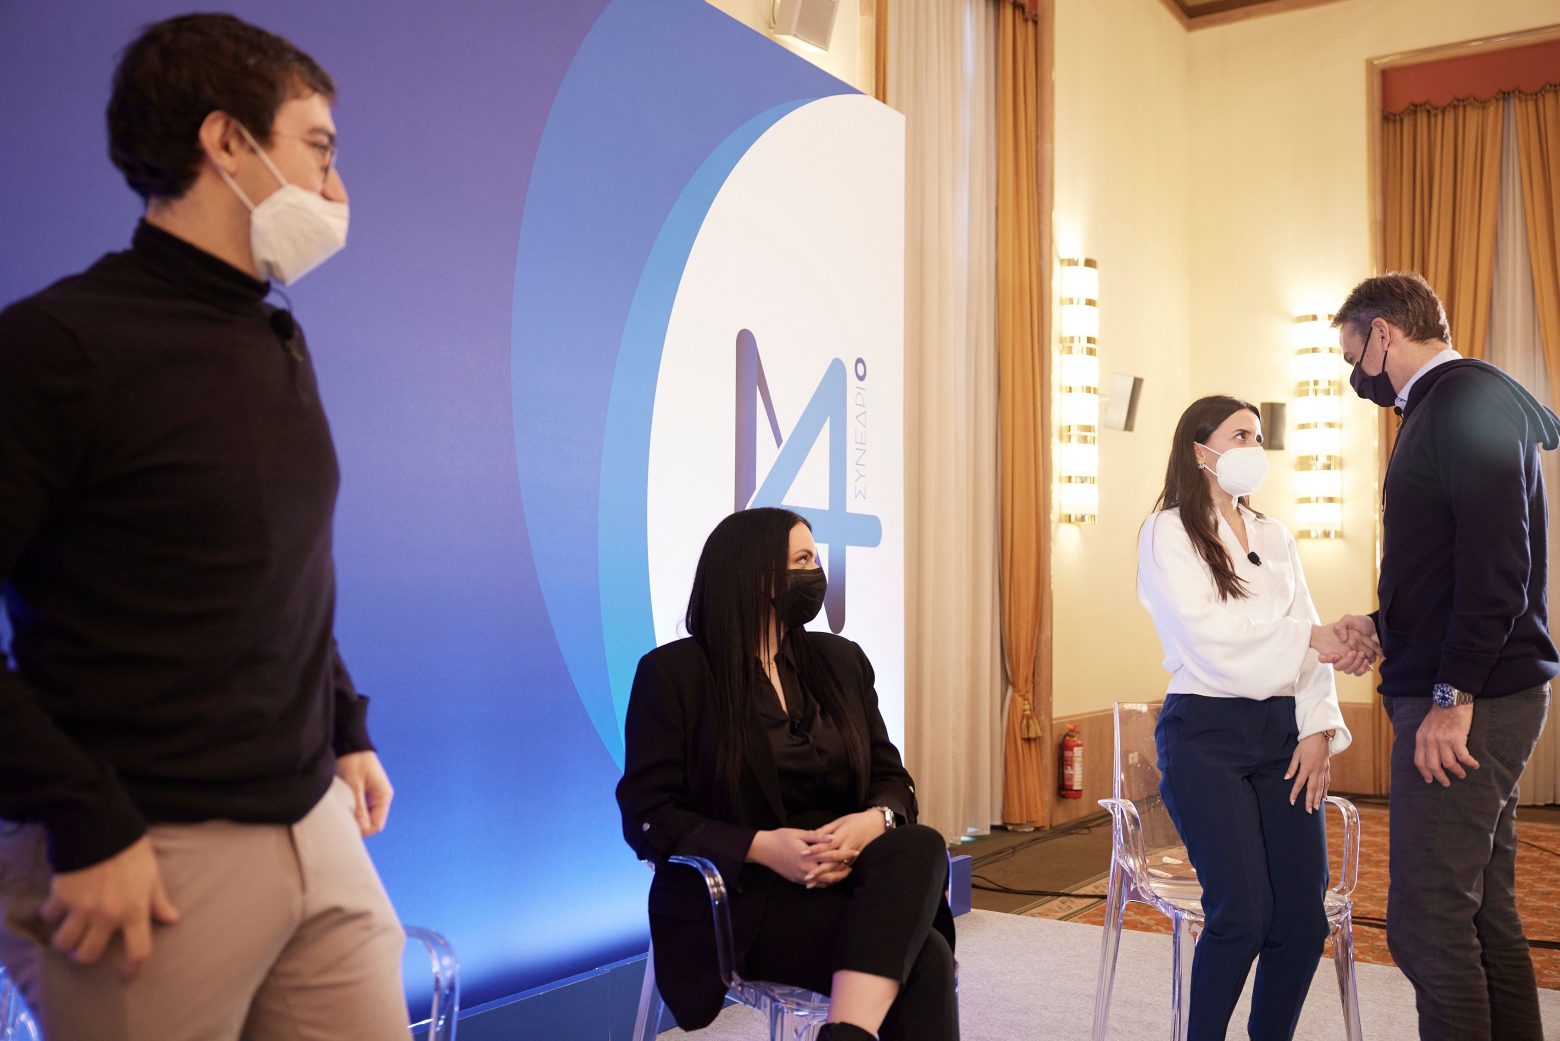 Προσυνέδριο ΝΔ - Τι ζήτησαν πέντε νέοι επαγγελματίες από τον Μητσοτάκη για να μείνουν στην Ελλάδα